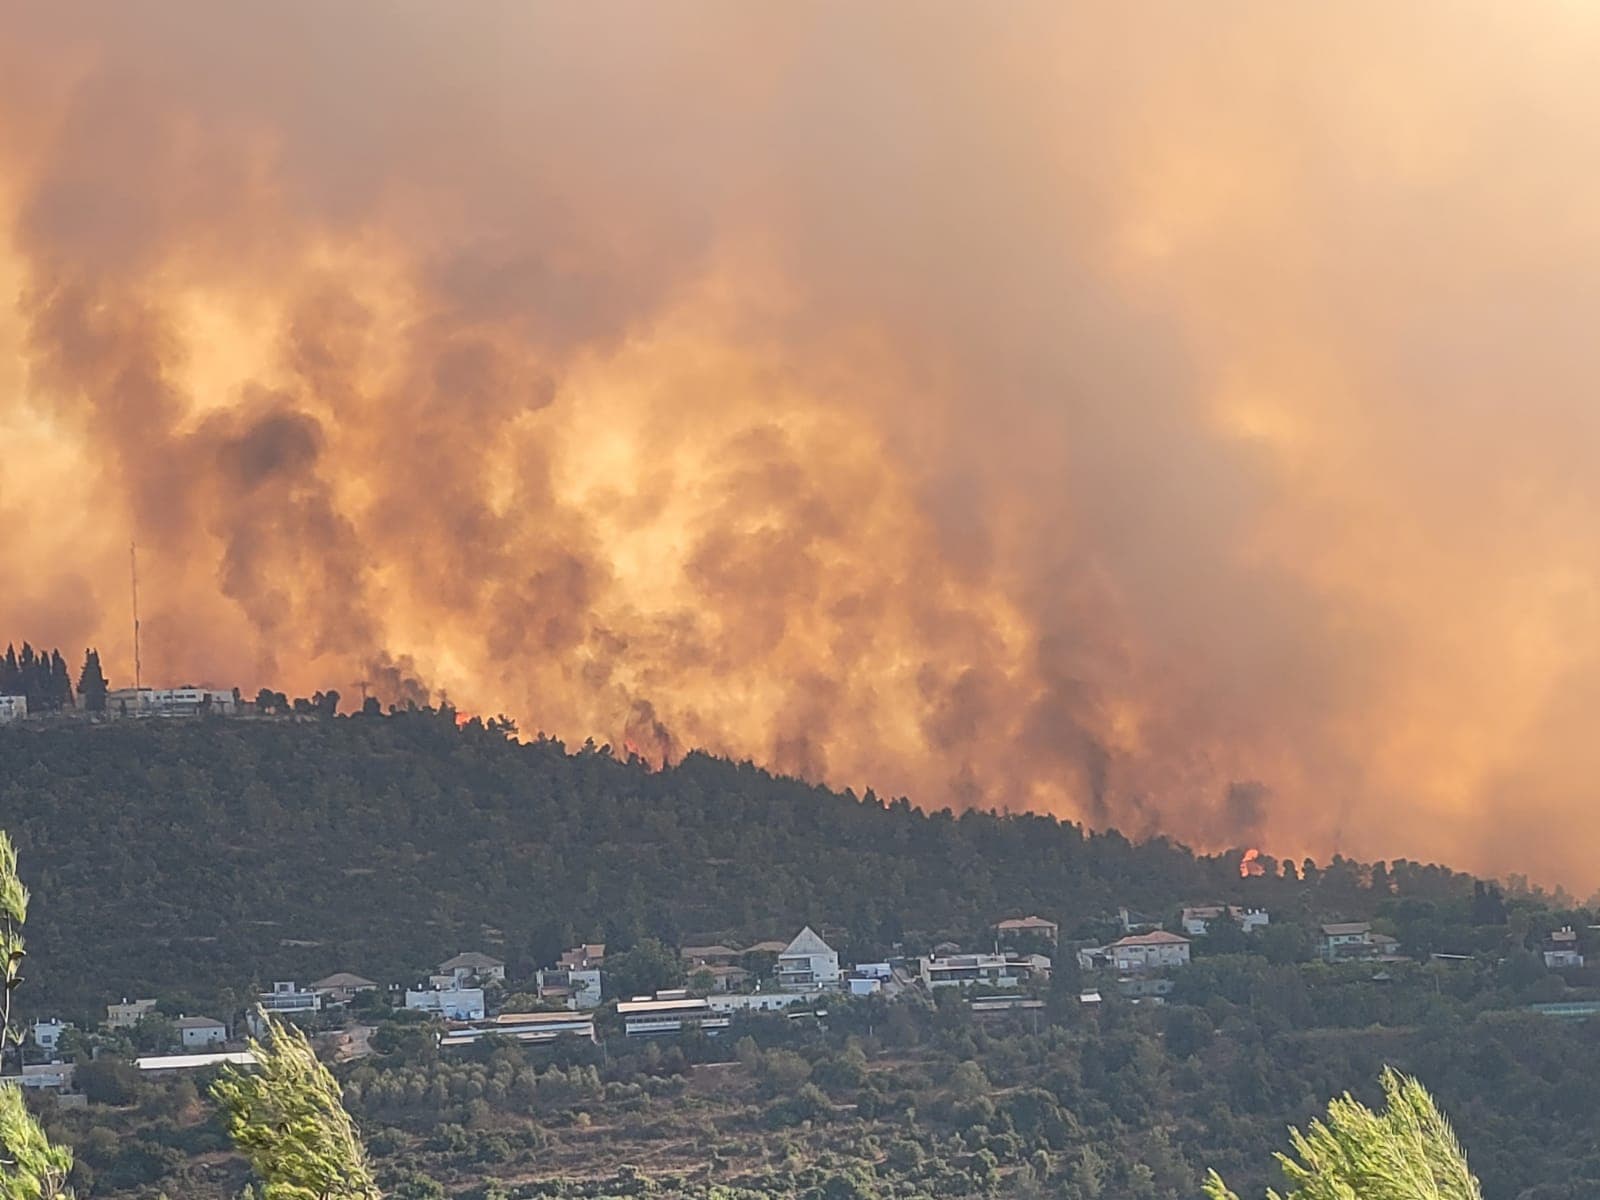 שרפה בהרי ירושלים, אוגוסט 2021 (צילום: אריאל קדם / רשות הטבע והגנים)